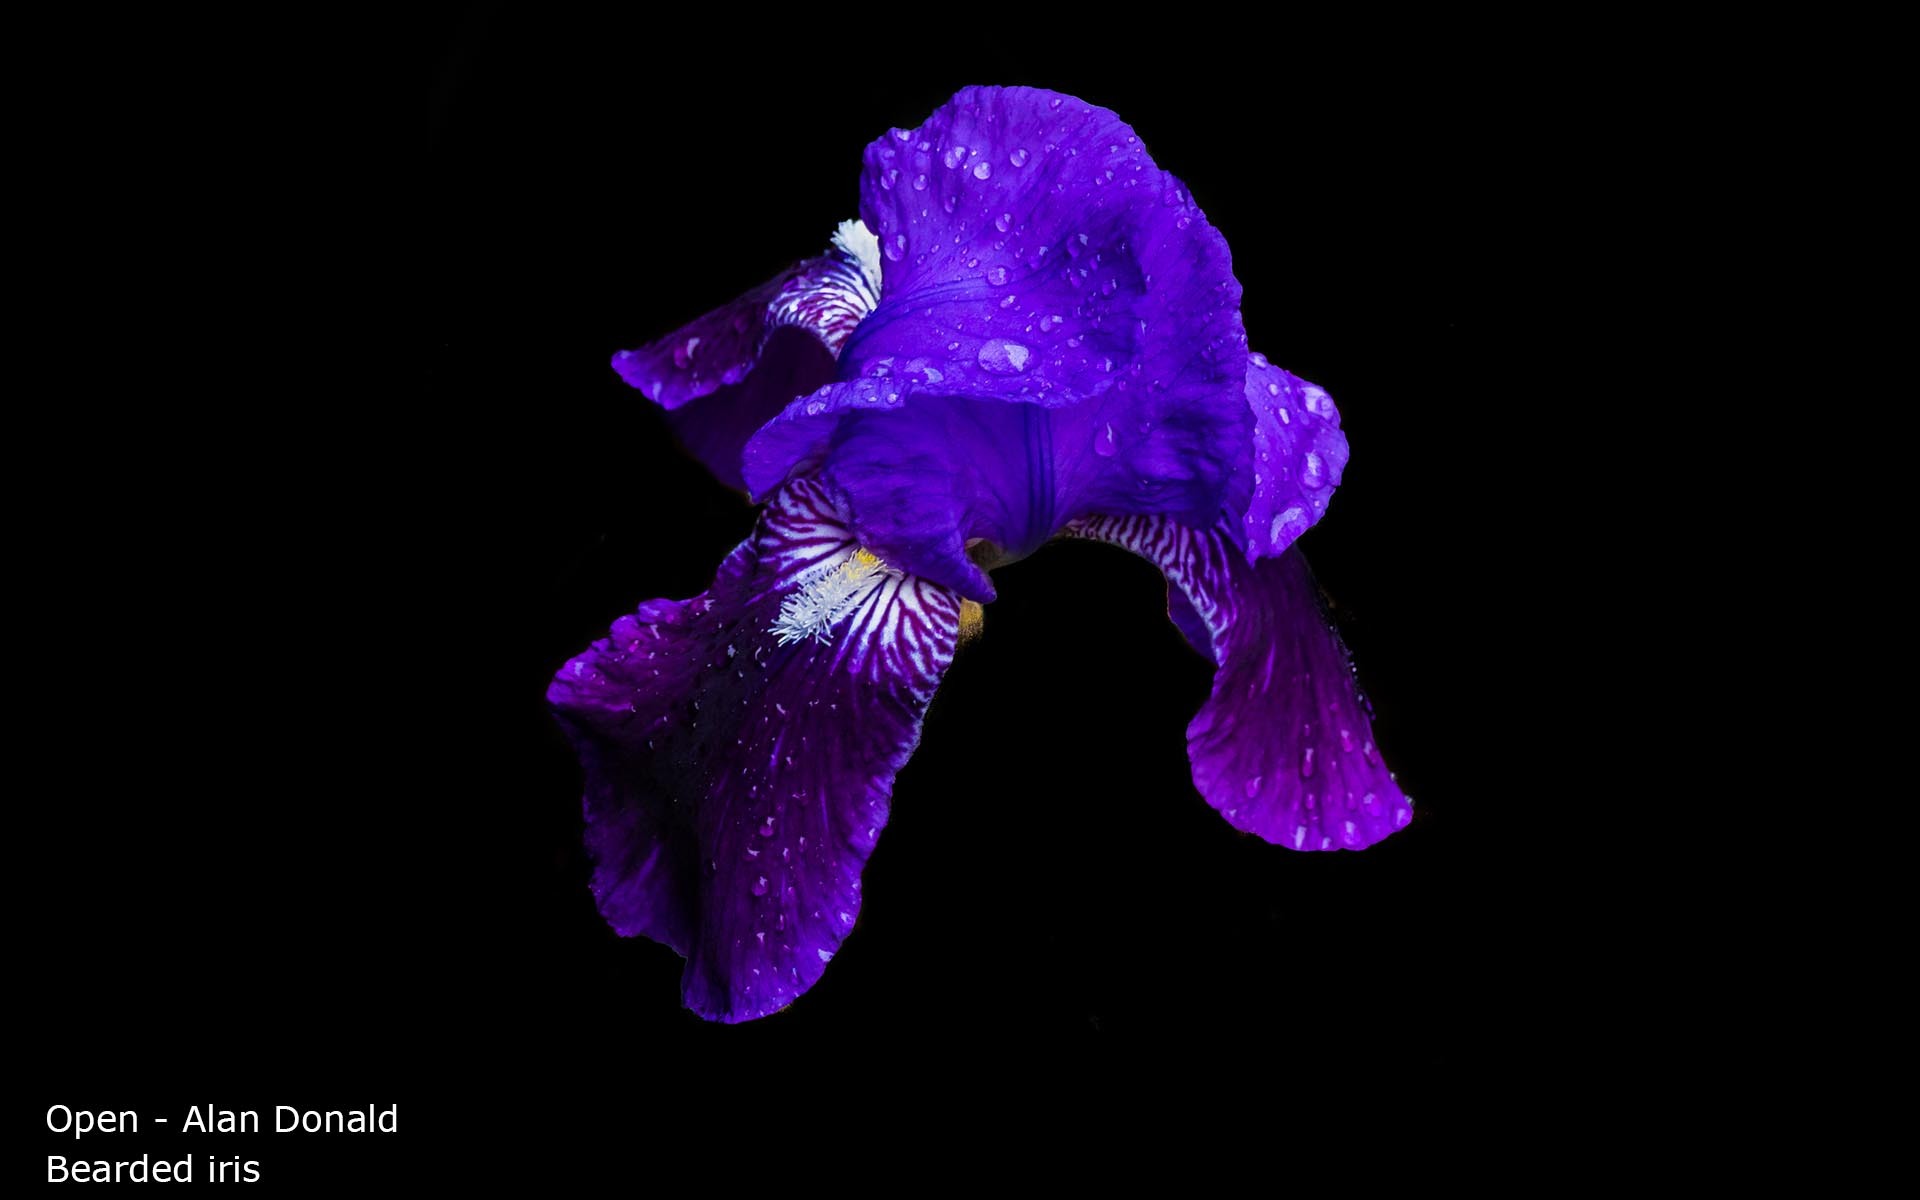 Bearded iris - Alan Donald